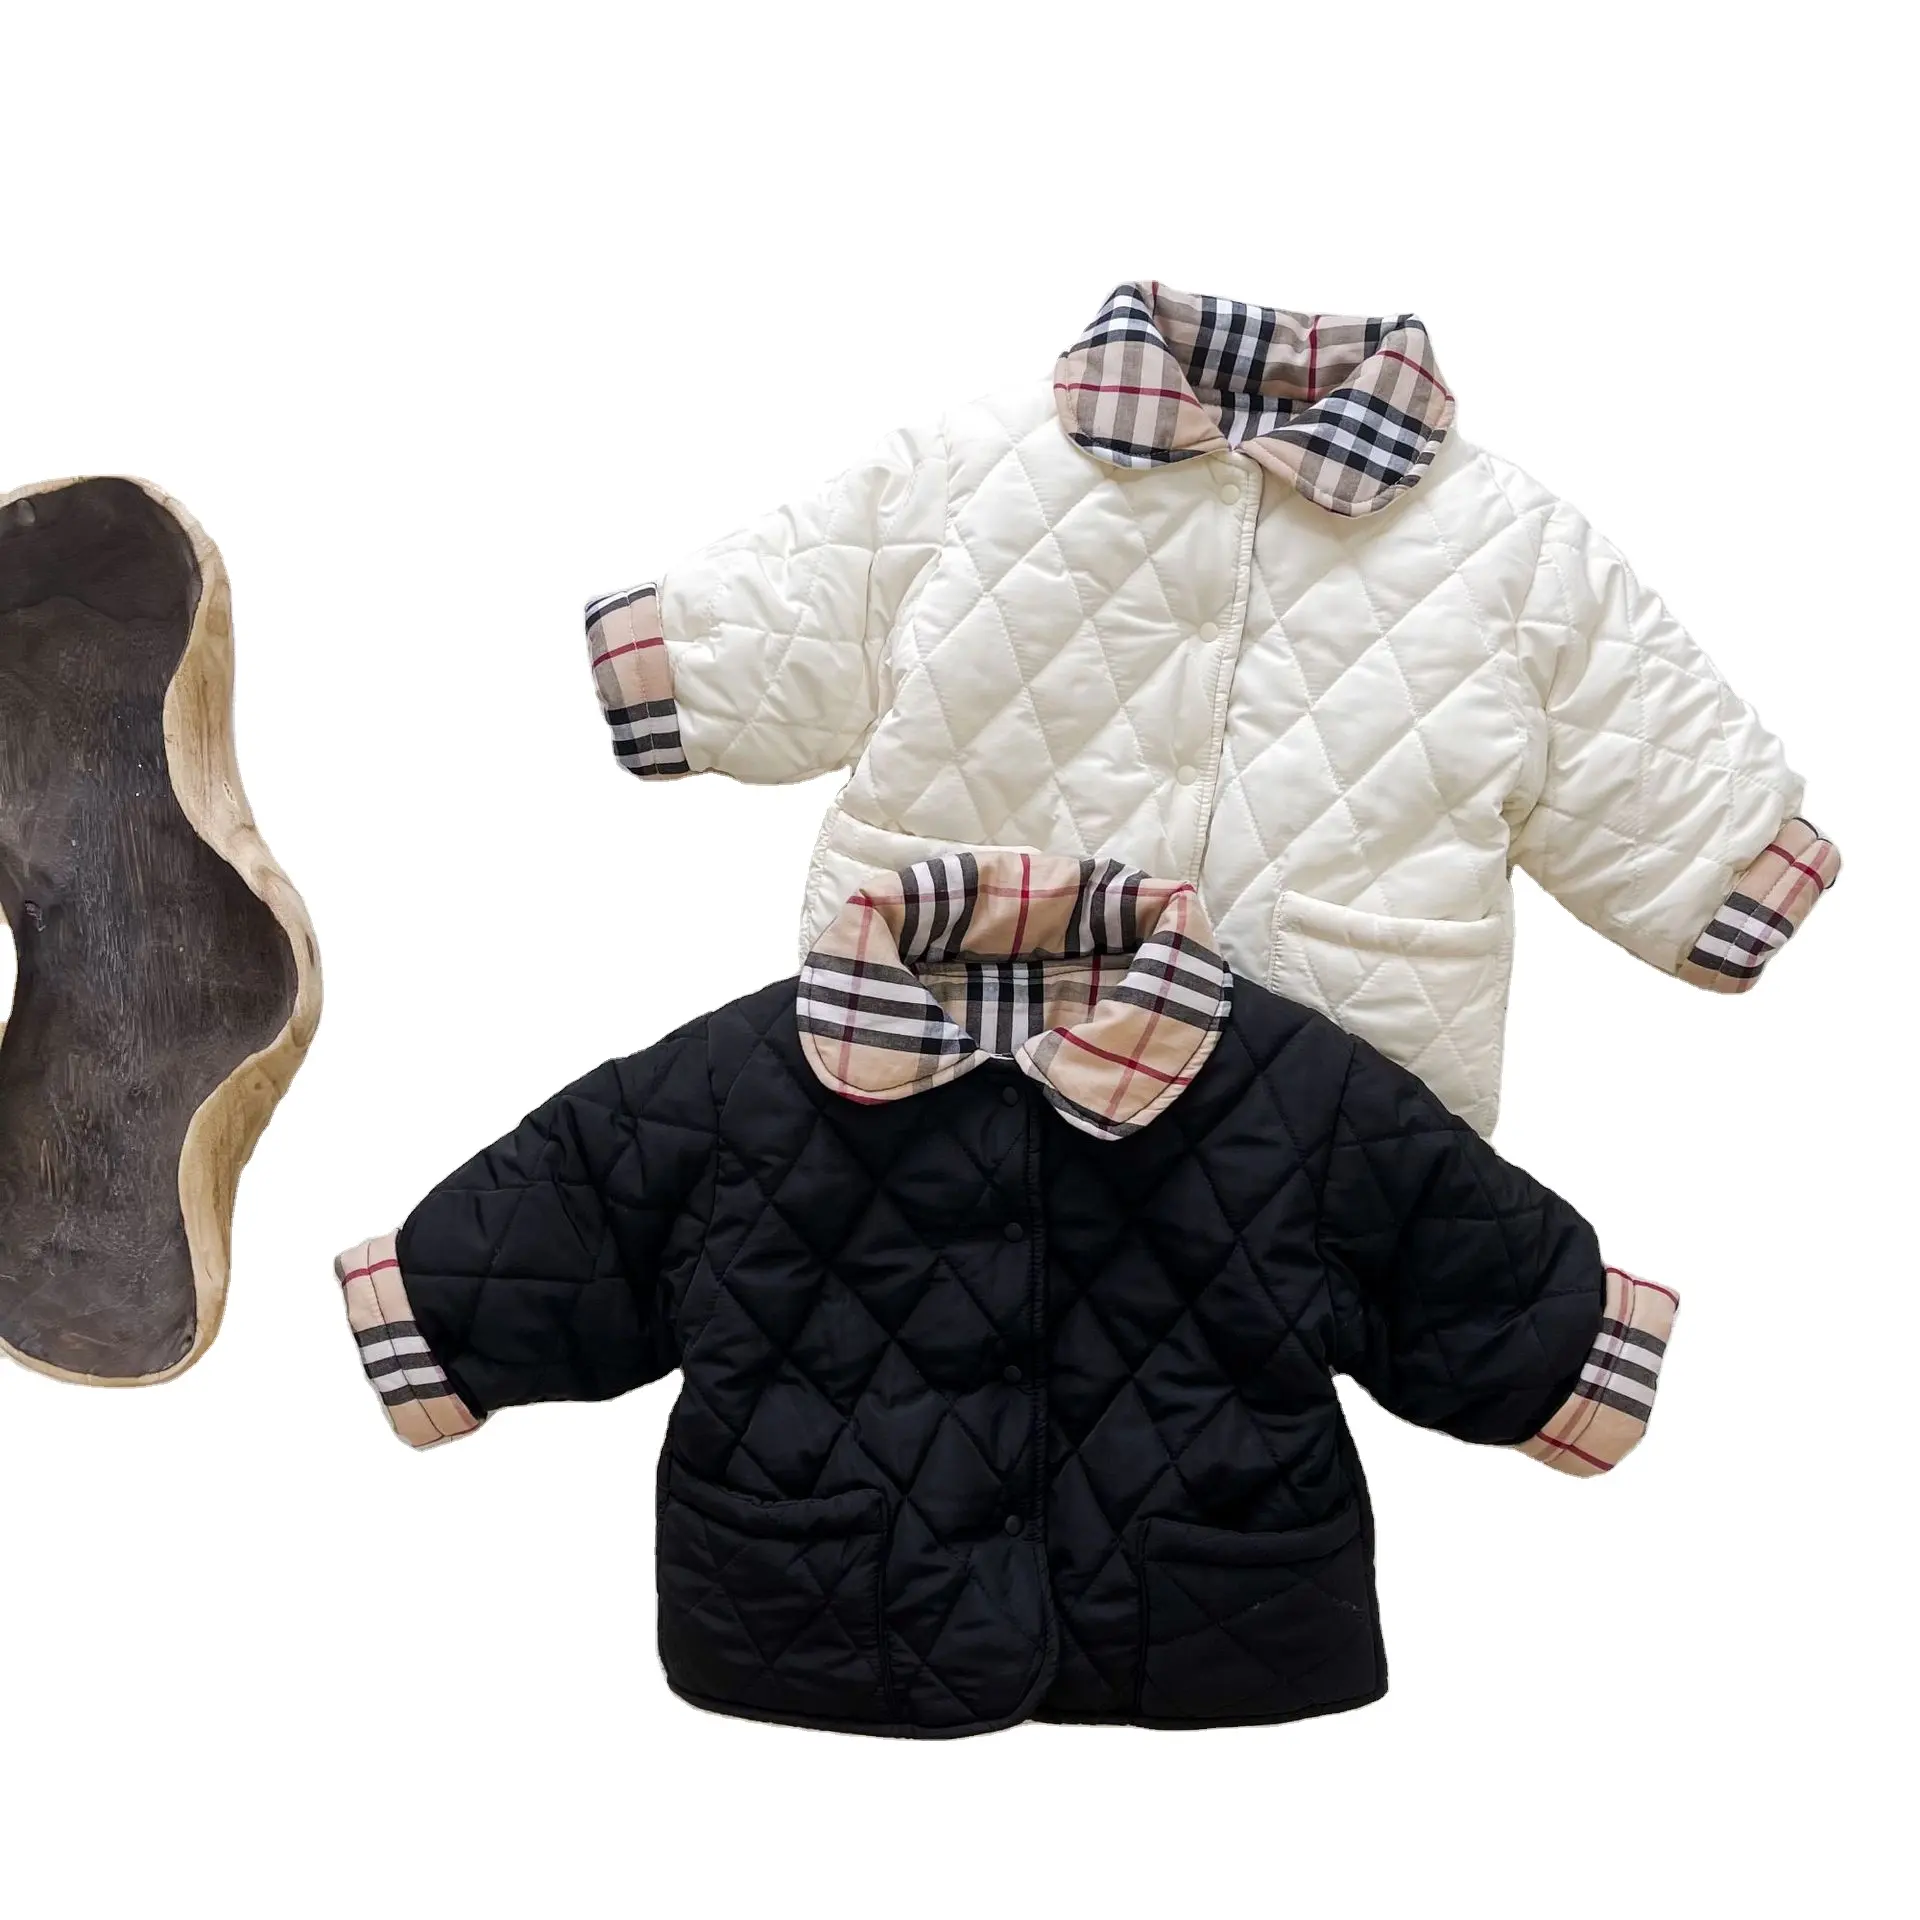 Оптовая продажа на заказ зимней одежды для новорожденных От 0 до 3 лет и его друзья» Детская плотная куртка-ветровка из хлопка, клетчатая рубашка с галстуком-бабочкой для маленьких, куртка, пальто, верхняя одежда